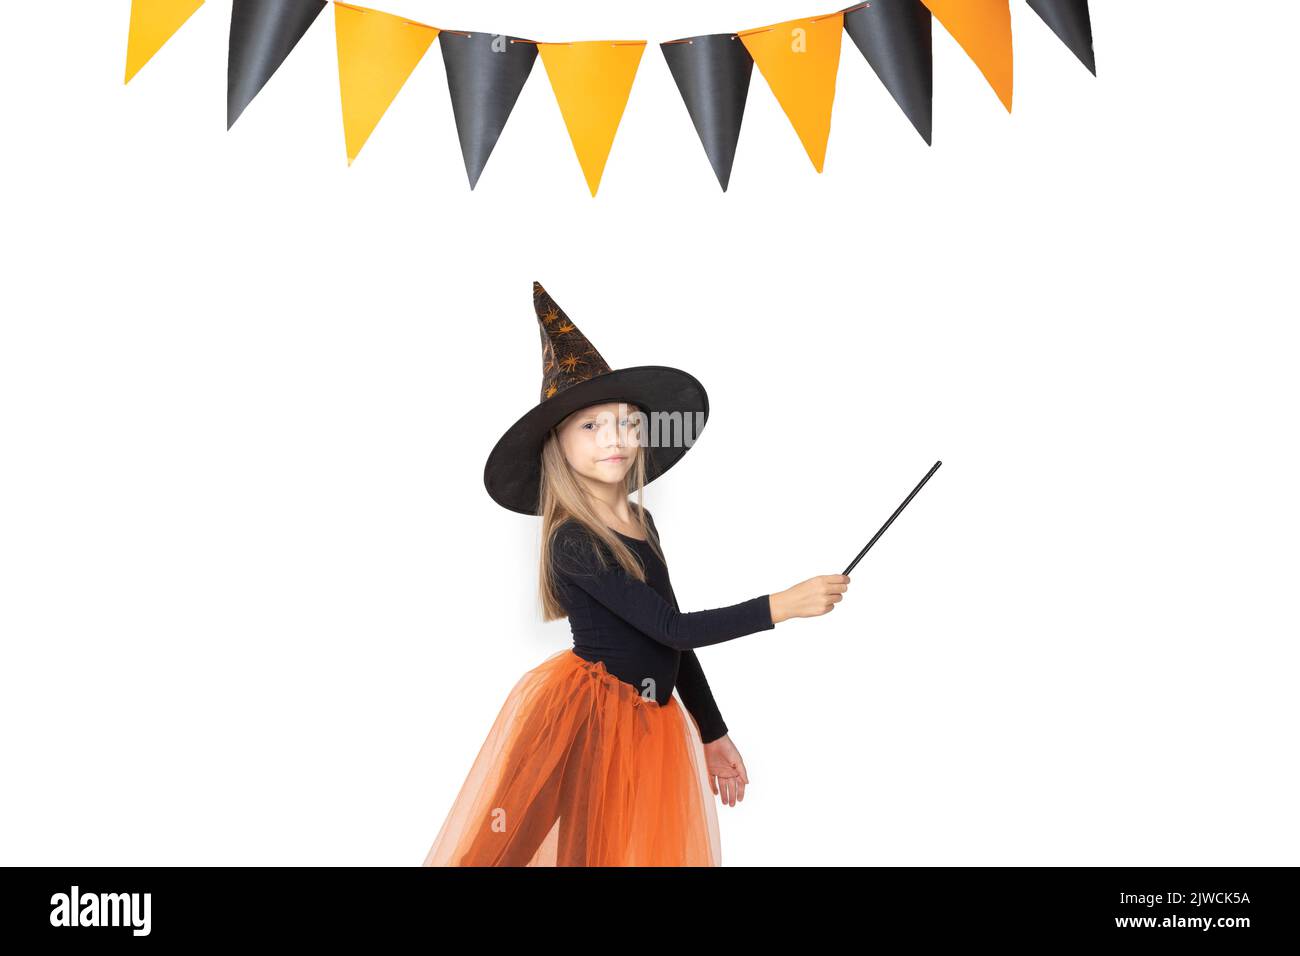 Halloween pour enfants. Une jolie petite fille dans un costume de sorcière, portant un chapeau, tenant une baguette magique montre un espace vide sur un fond blanc avec un garlan Banque D'Images